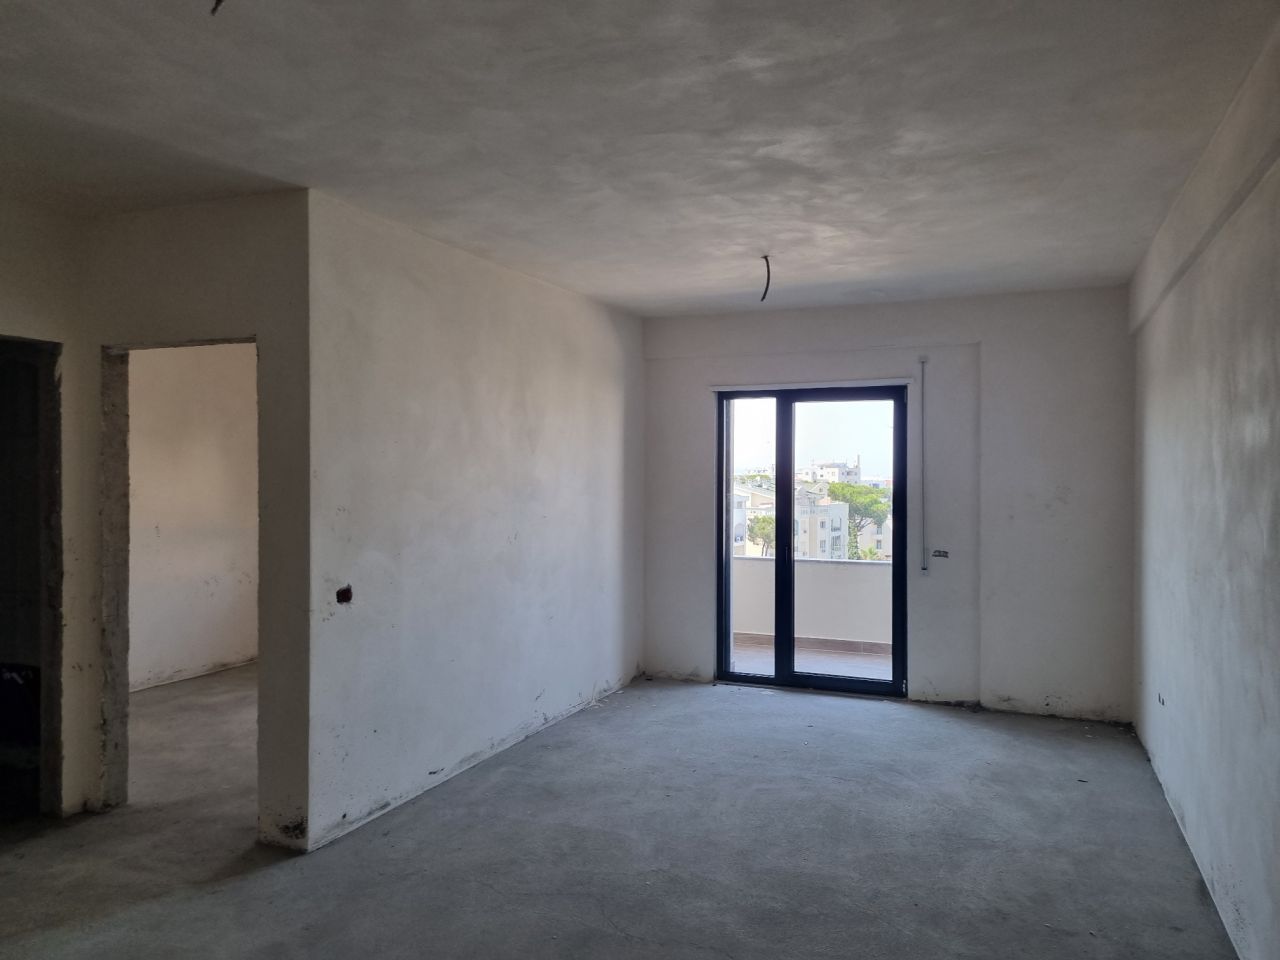 Wohnung Zum Verkauf In Golem Durres, Albanien, In Einer Ruhigen Gegend, Nahe Dem Strand Gelegen